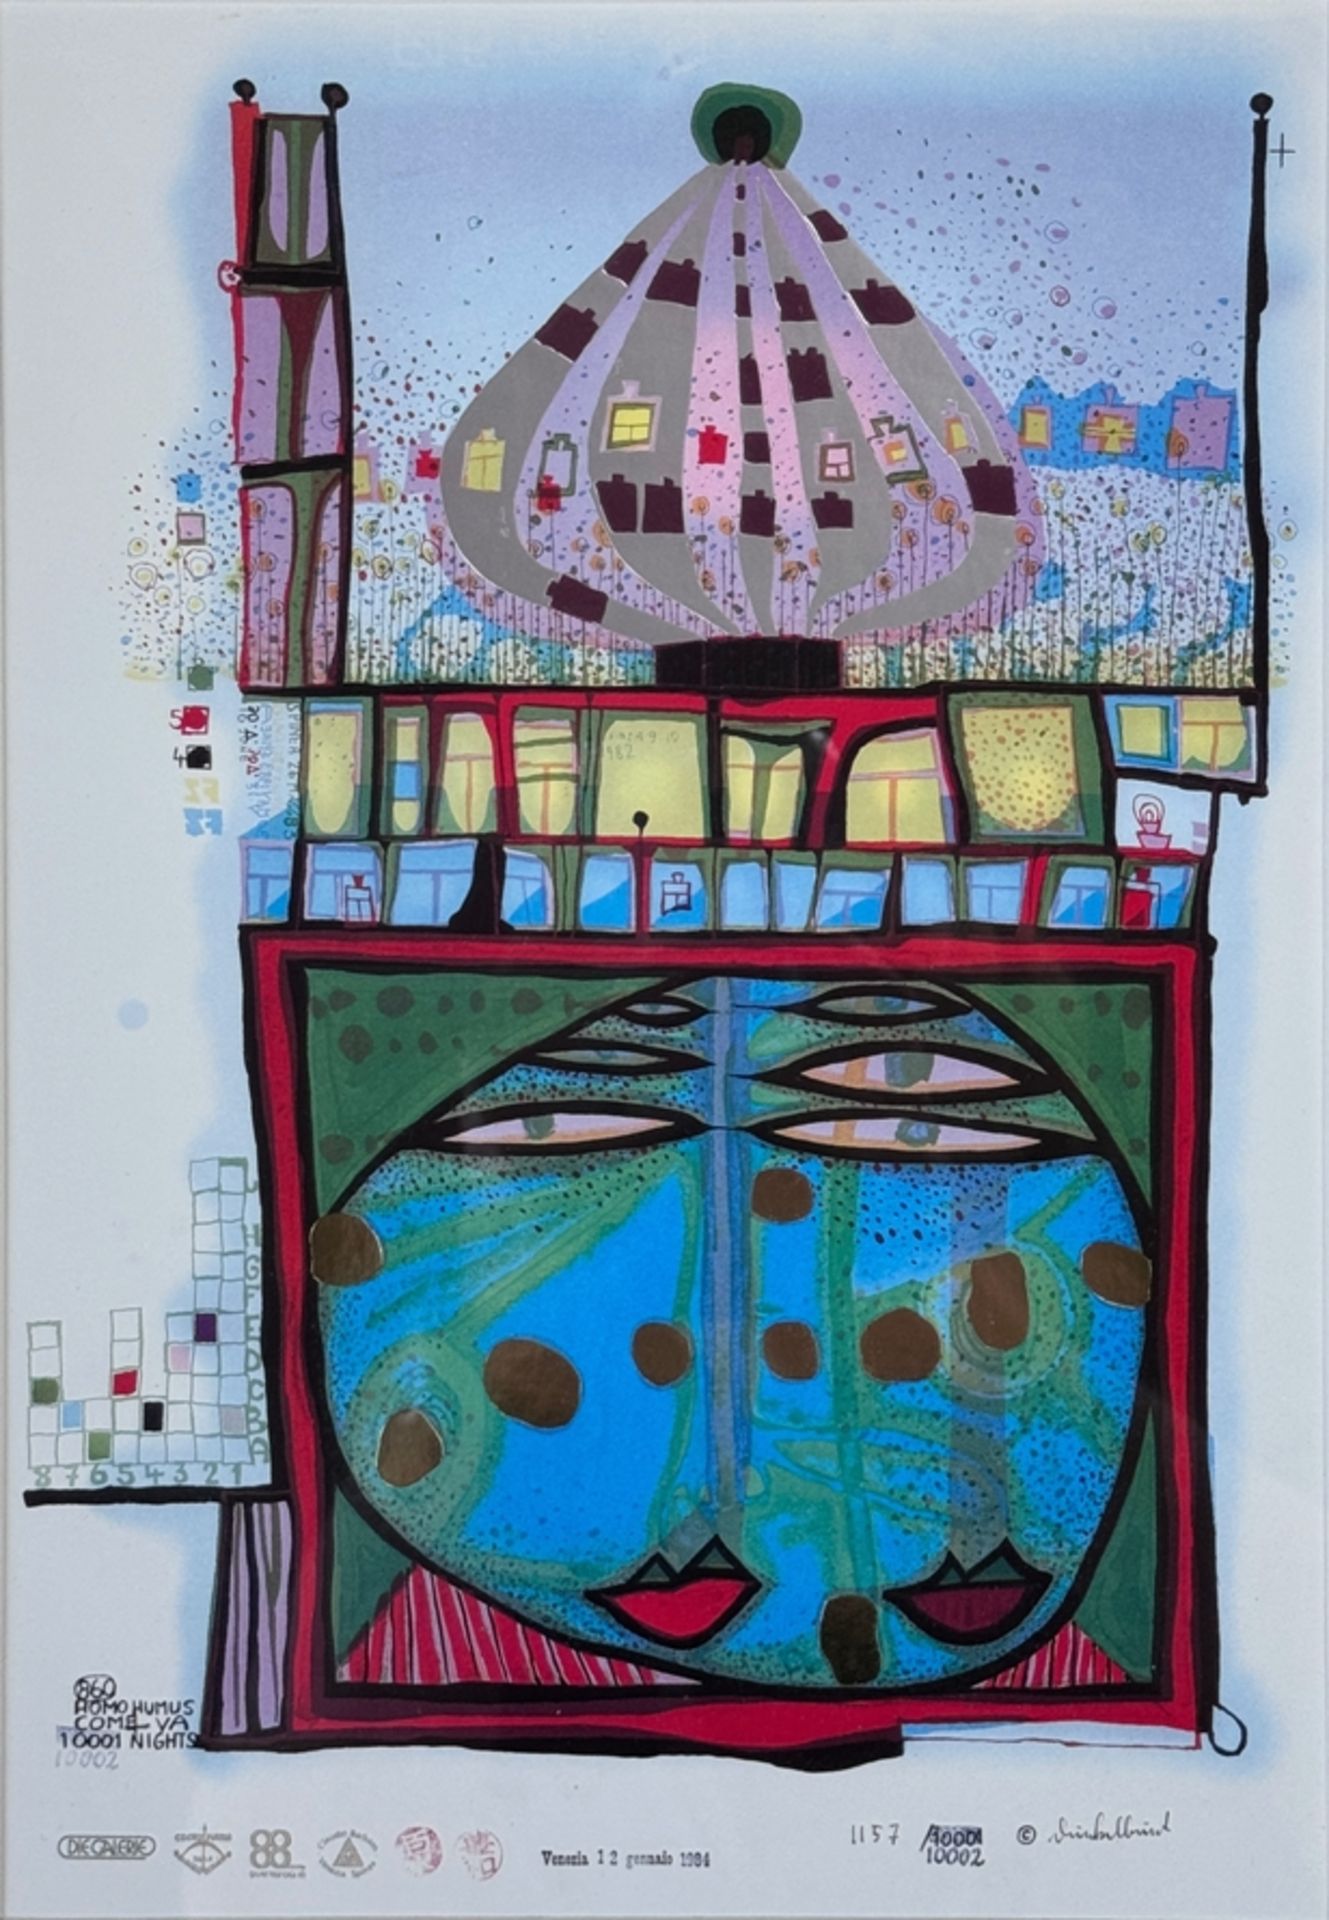 Hundertwasser, Friedensreich (1928 Wien - 2000 Queen Elizabeth II, Pazifischer Ozean) "10002 Nights